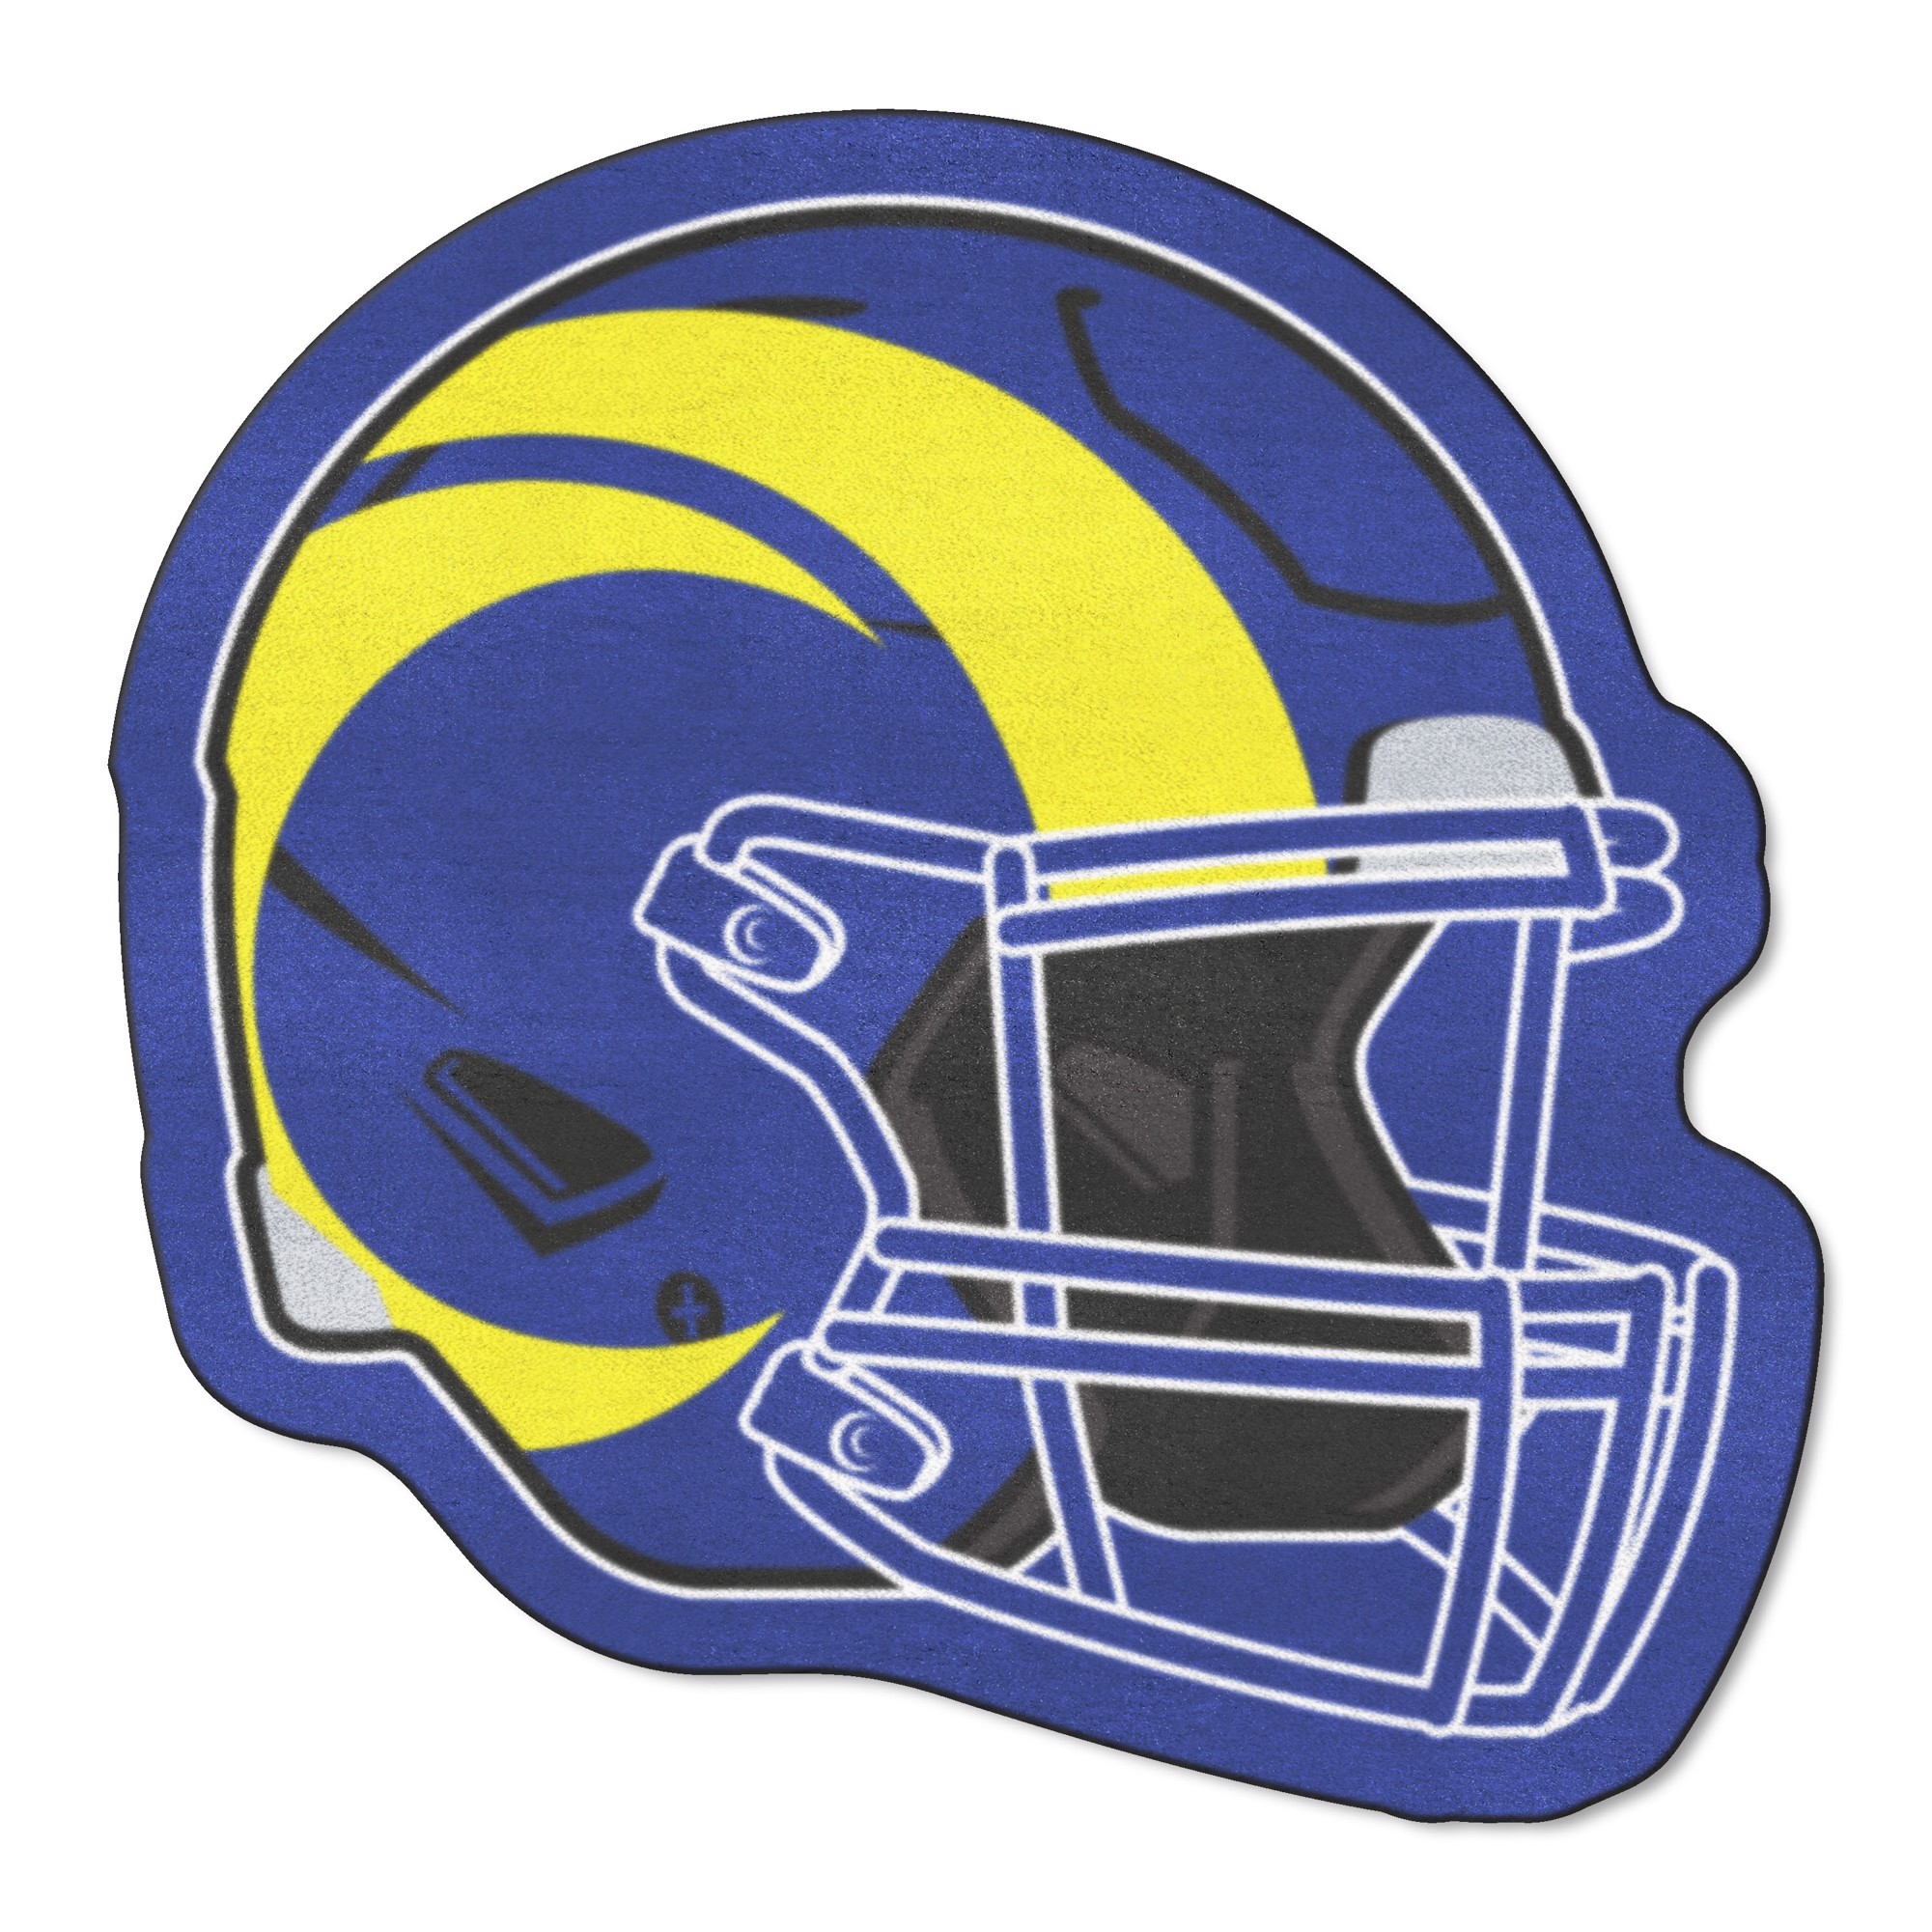 Las Vegas Raiders Mascot Mat - Helmet